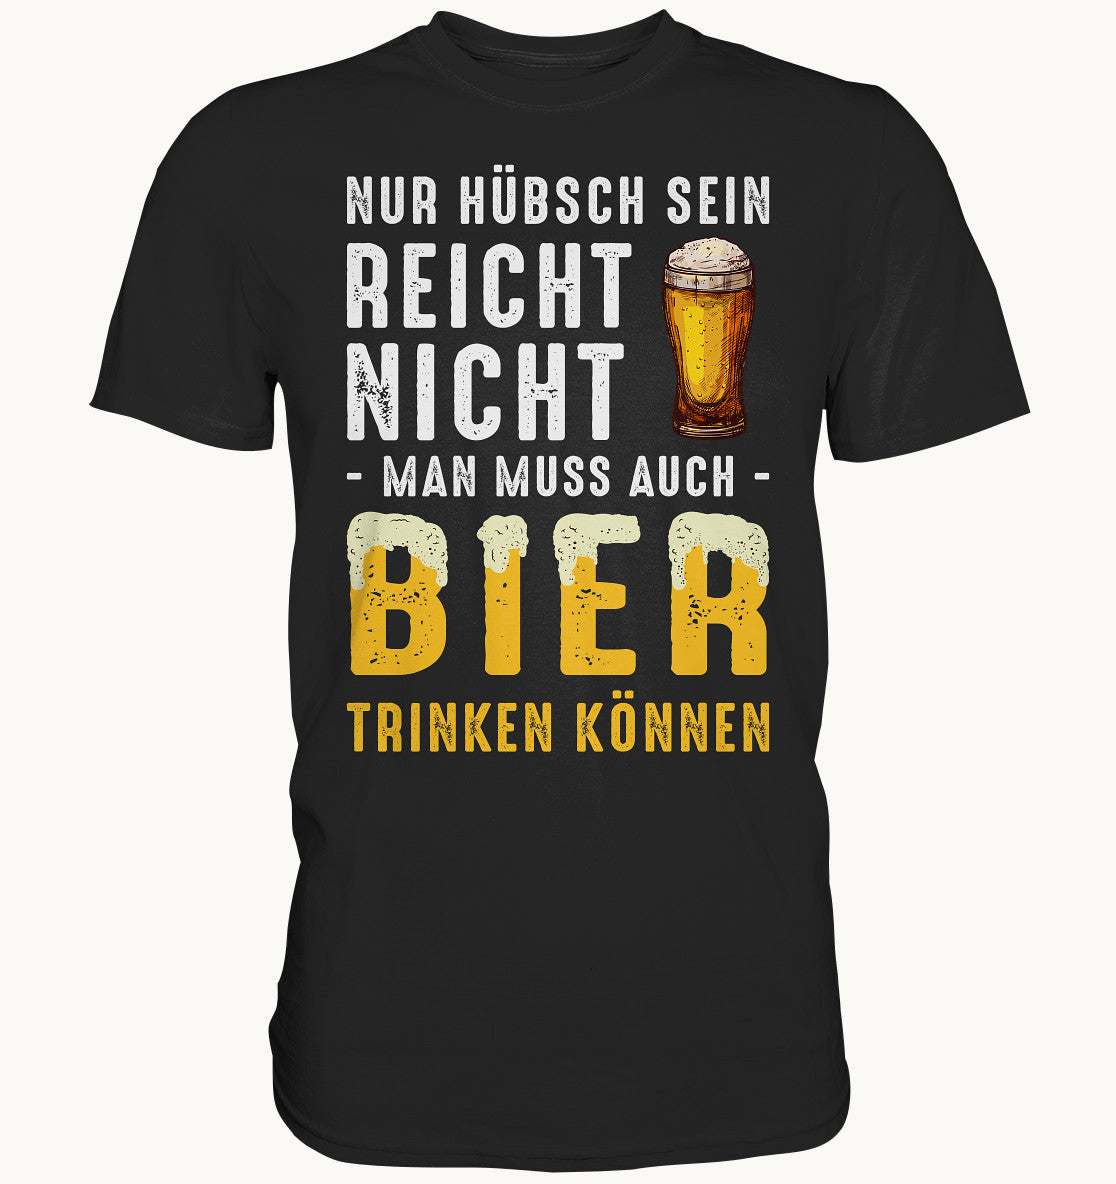 Nür hübsch sein reicht nicht, man muss auch Bier trinken können - Premium Shirt